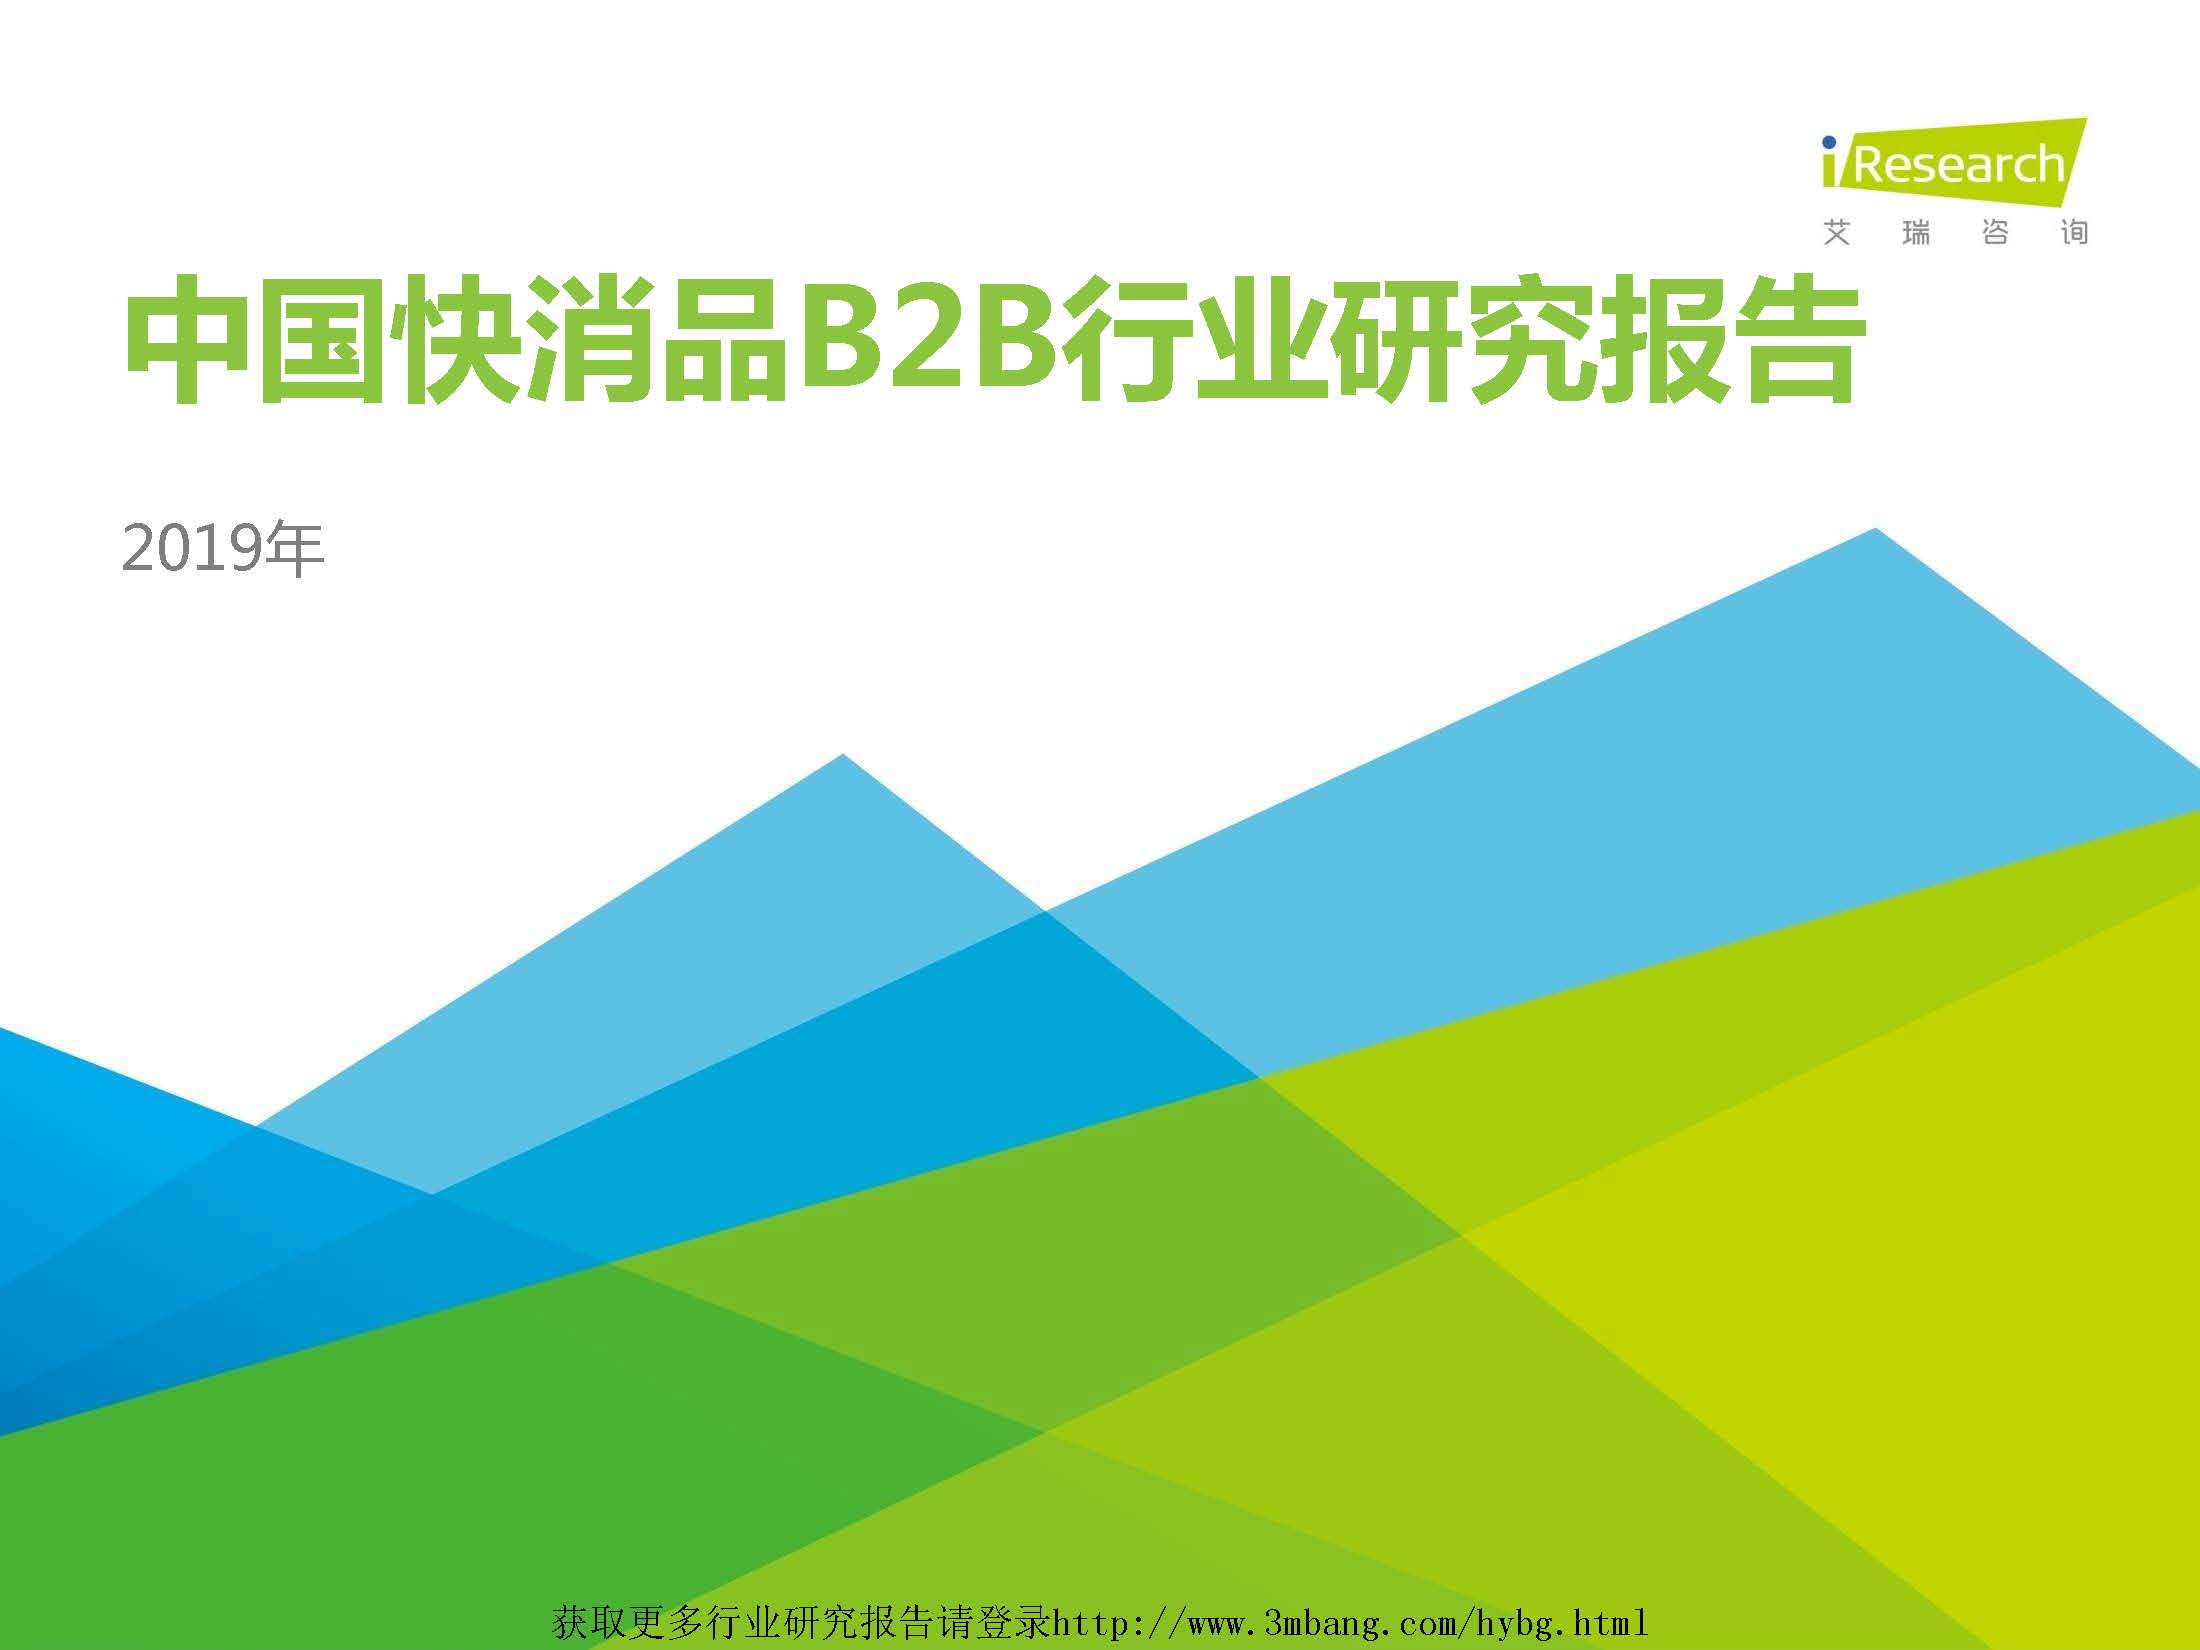 艾瑞：2019年中国快消品B2B行业发展研究报告（附下载地址）